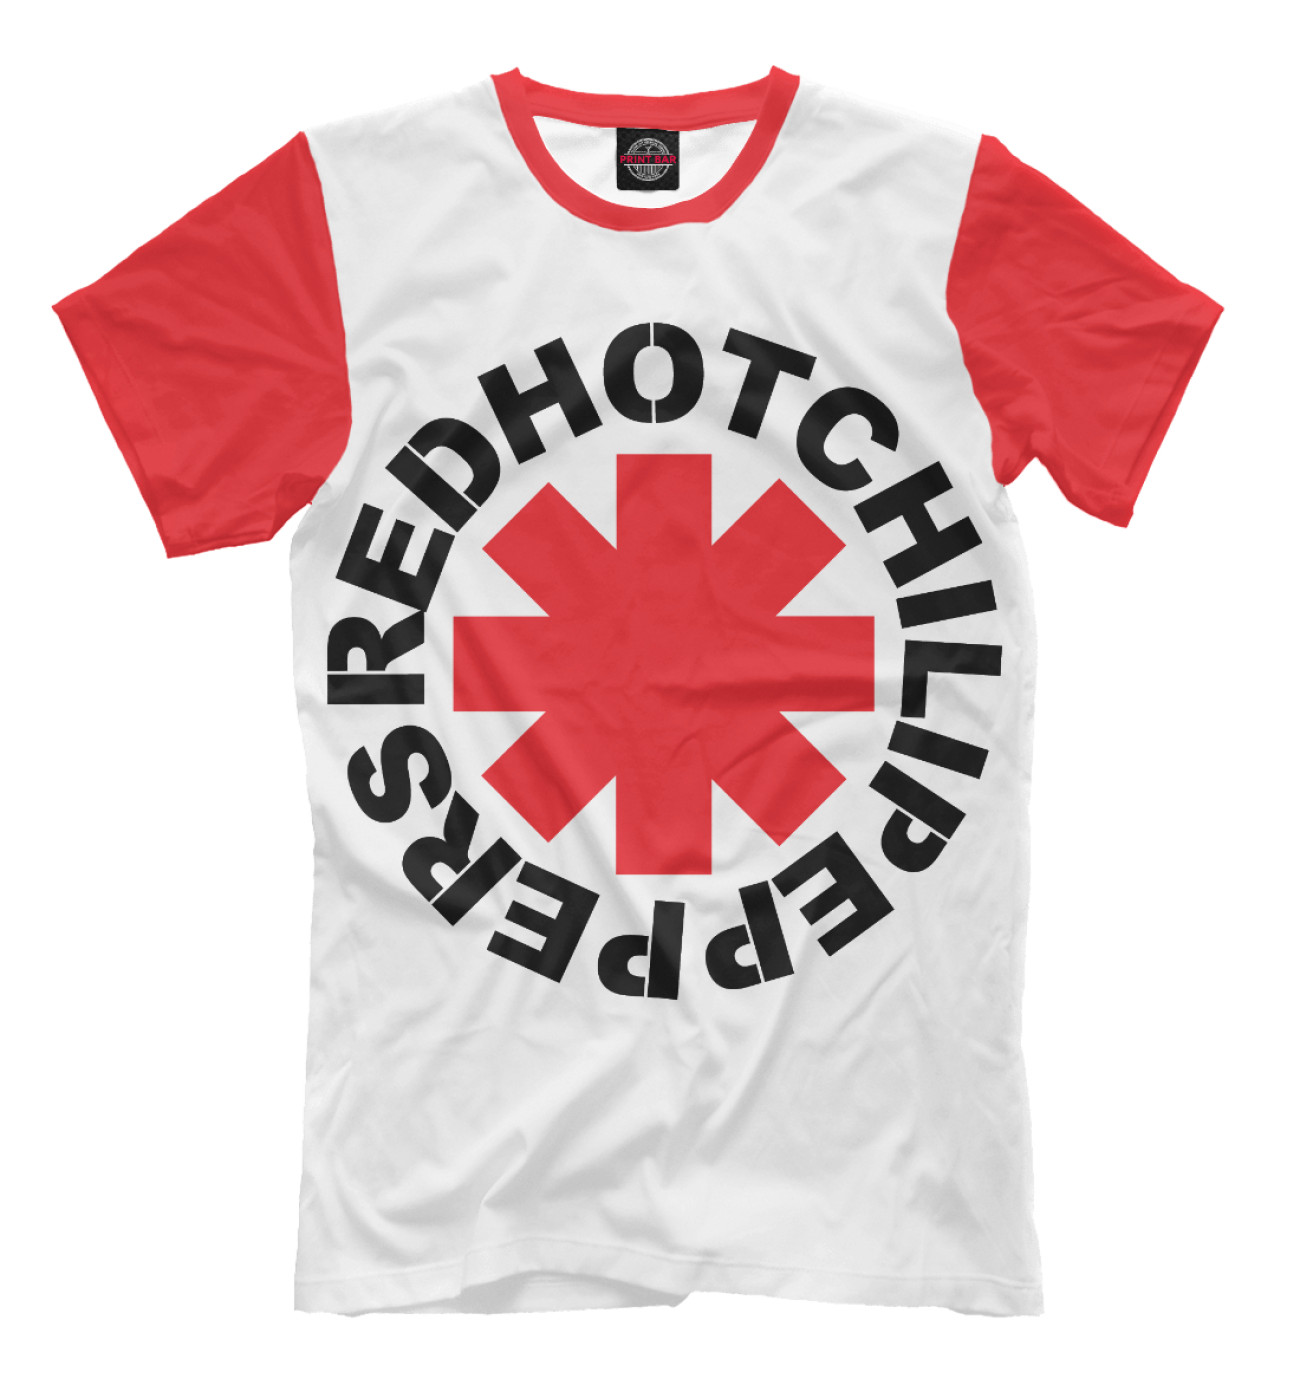 Мужская Футболка Red Hot Chili Peppers, артикул: RED-871743-fut-2